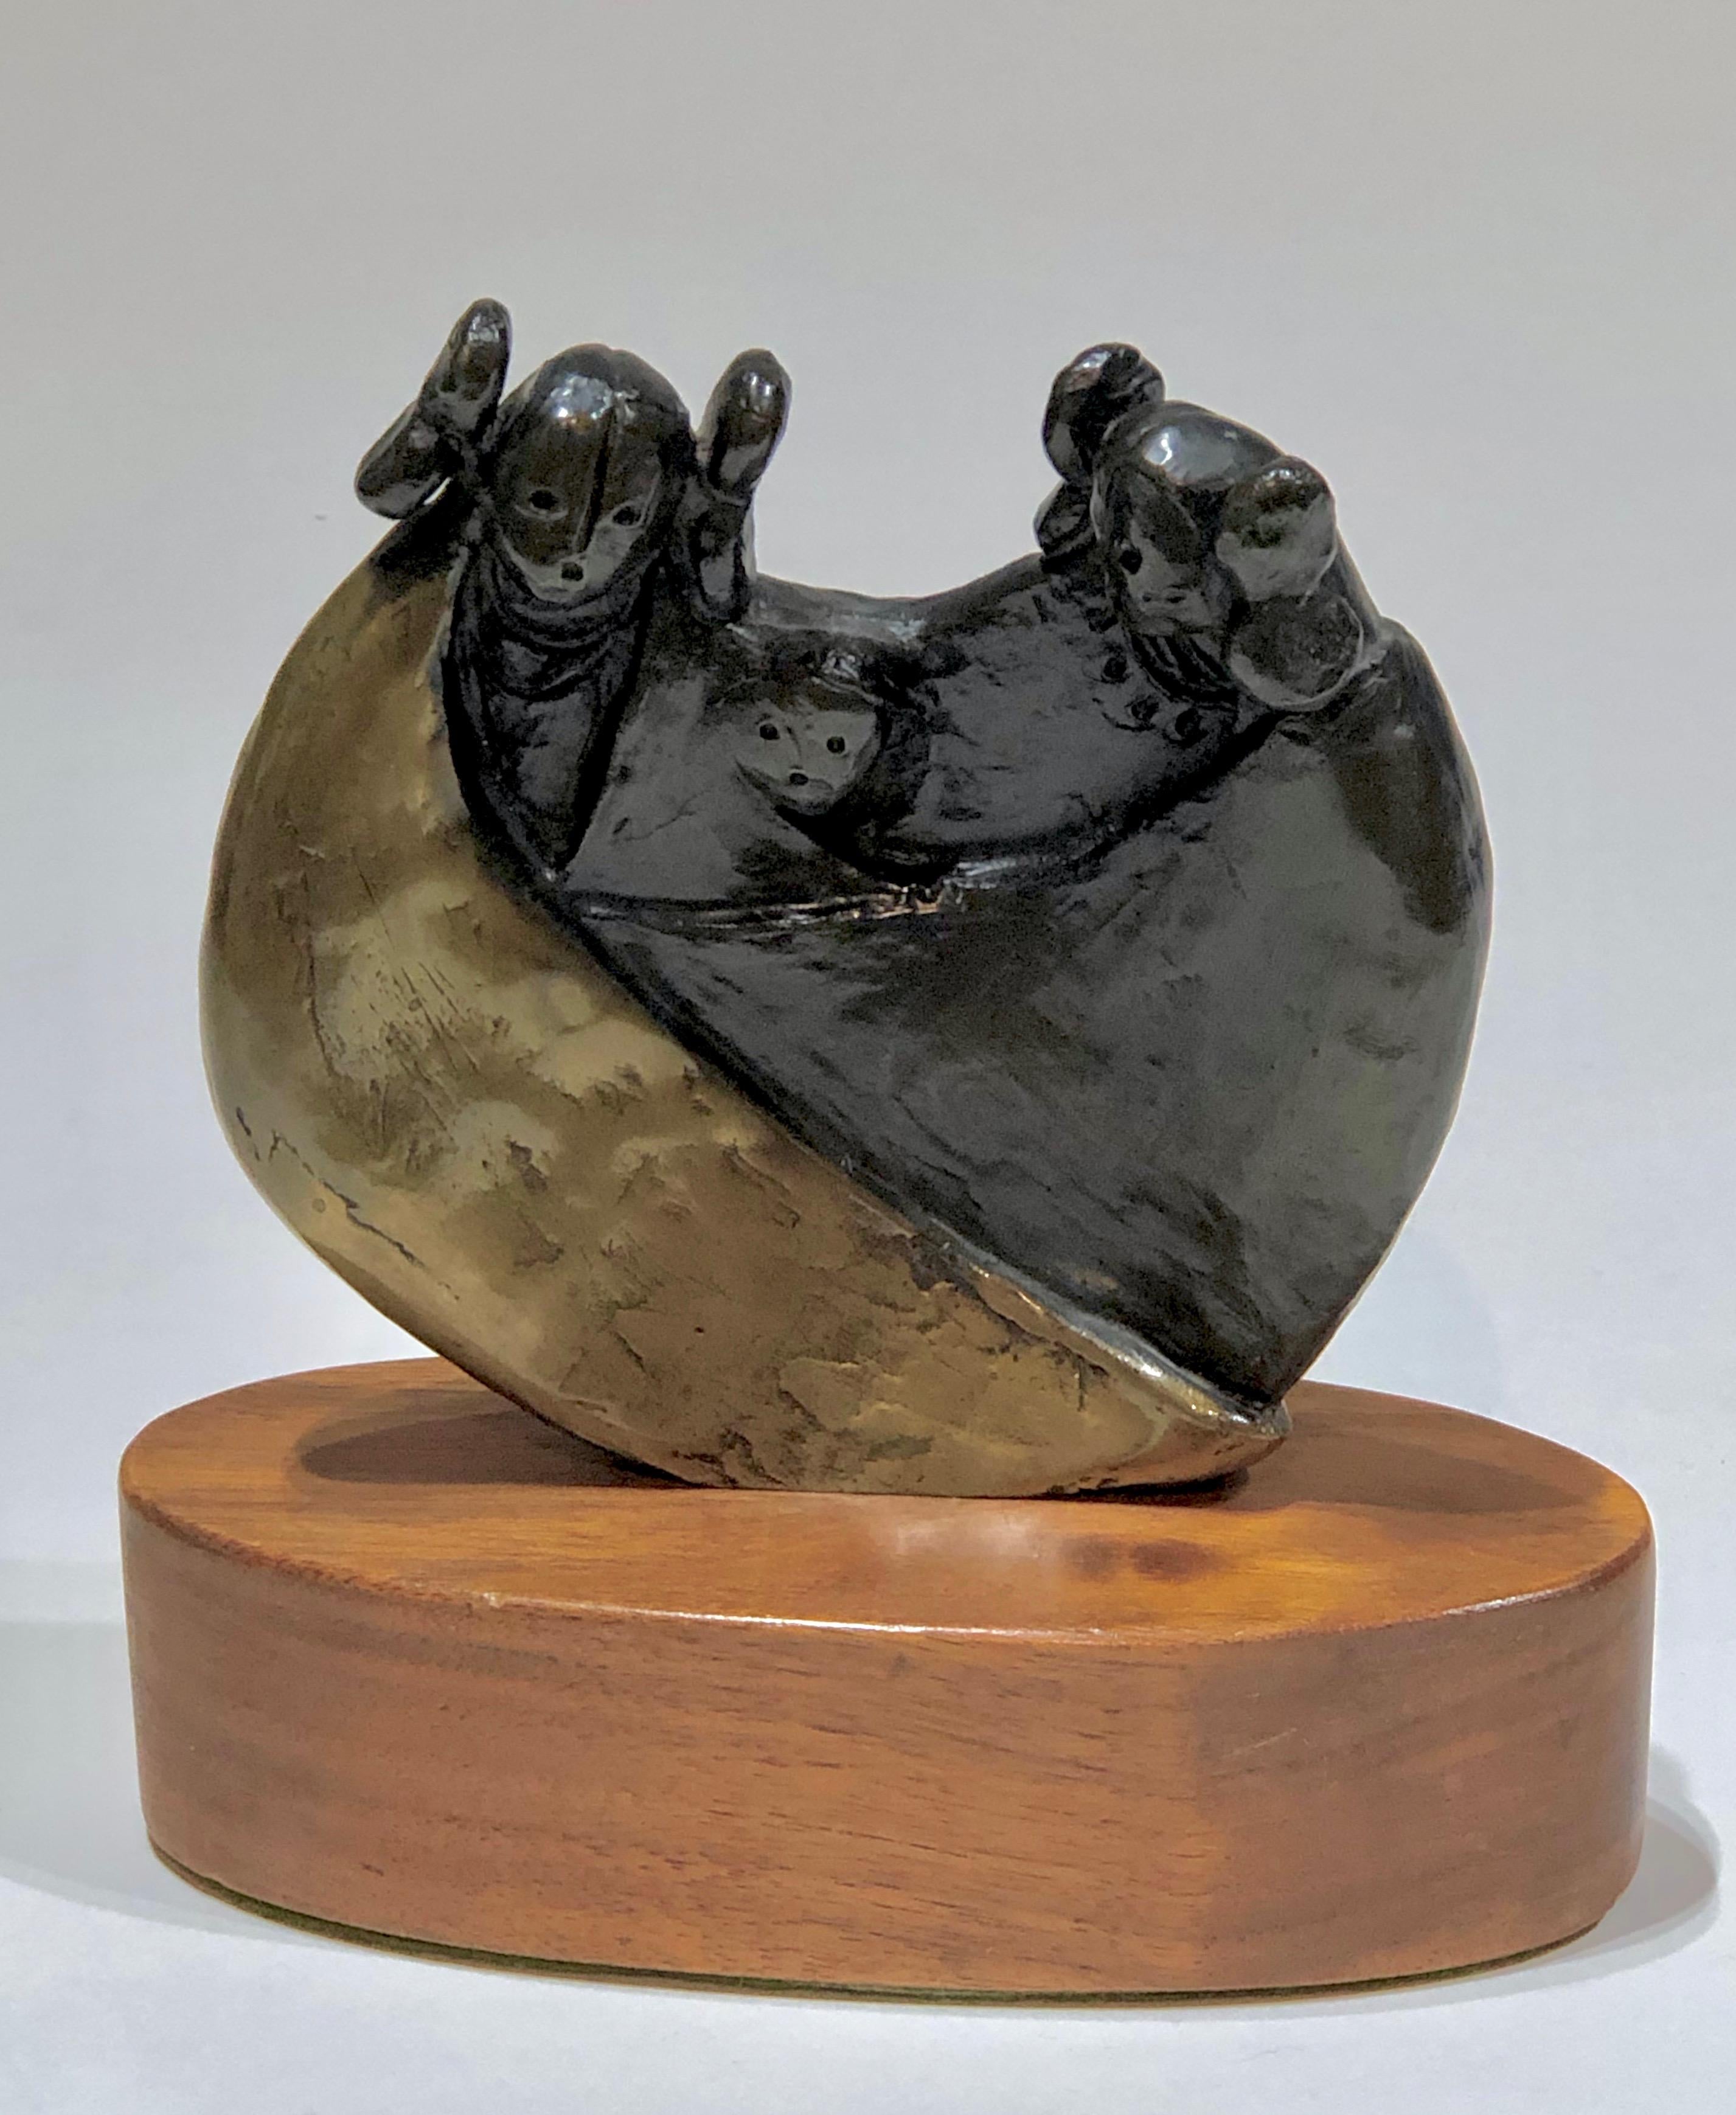 Famille Kachina, bronze de Dan Namingha, patine dorée et brune, édition limitée

édition limitée en bronze 